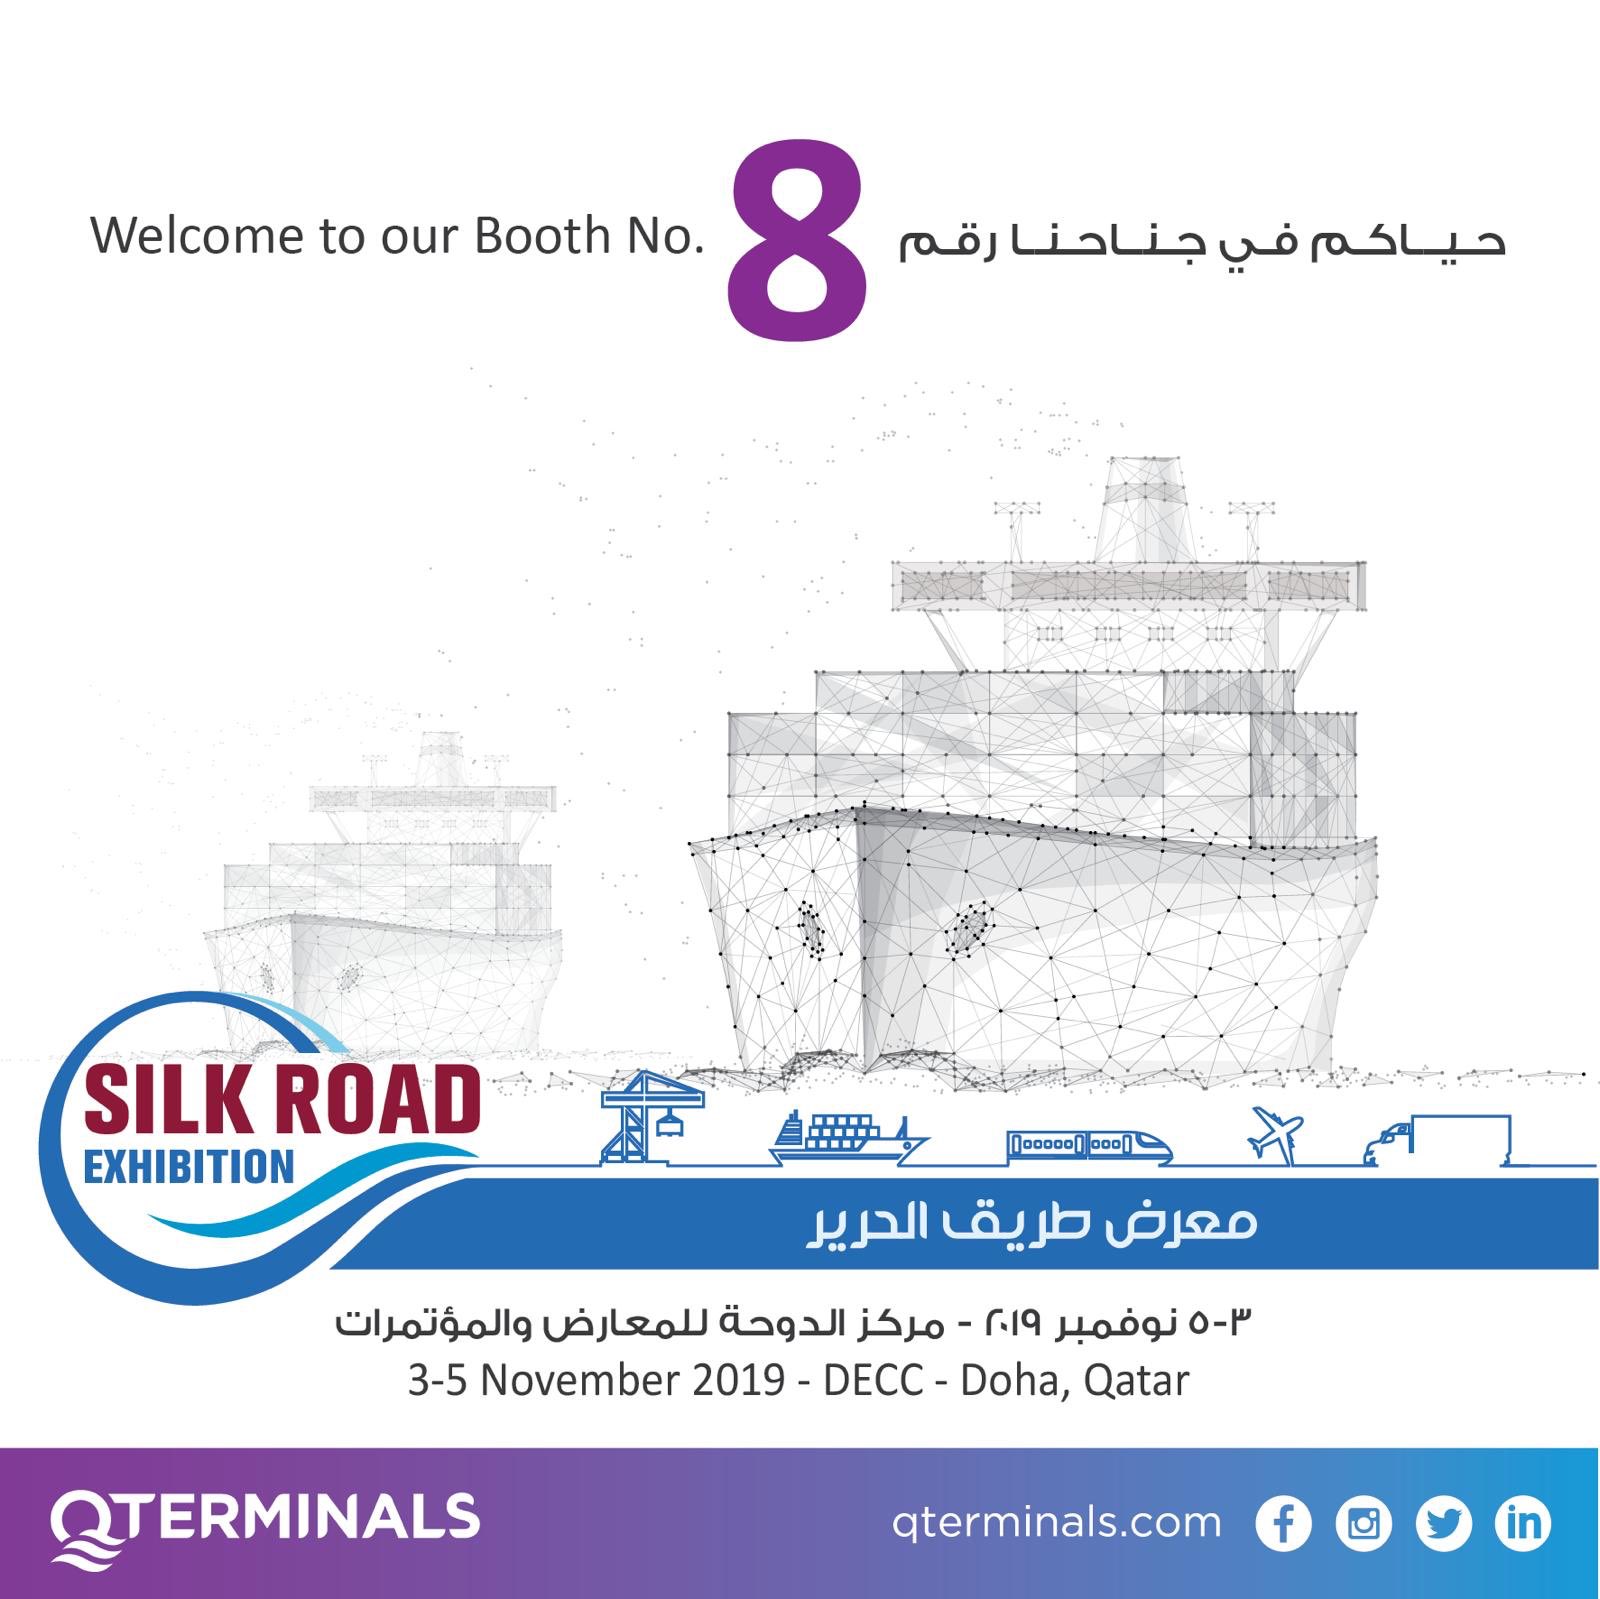 Qterminals On Twitter حياكم في جناحنا في معرض طريق الحرير من تاريخ ٣ ٥ نوفمبر ٢٠١٩ في مركز الدوحة للمعارض والمؤتمرات الدوحة قطر Welcome To Our Booth At Silk Road